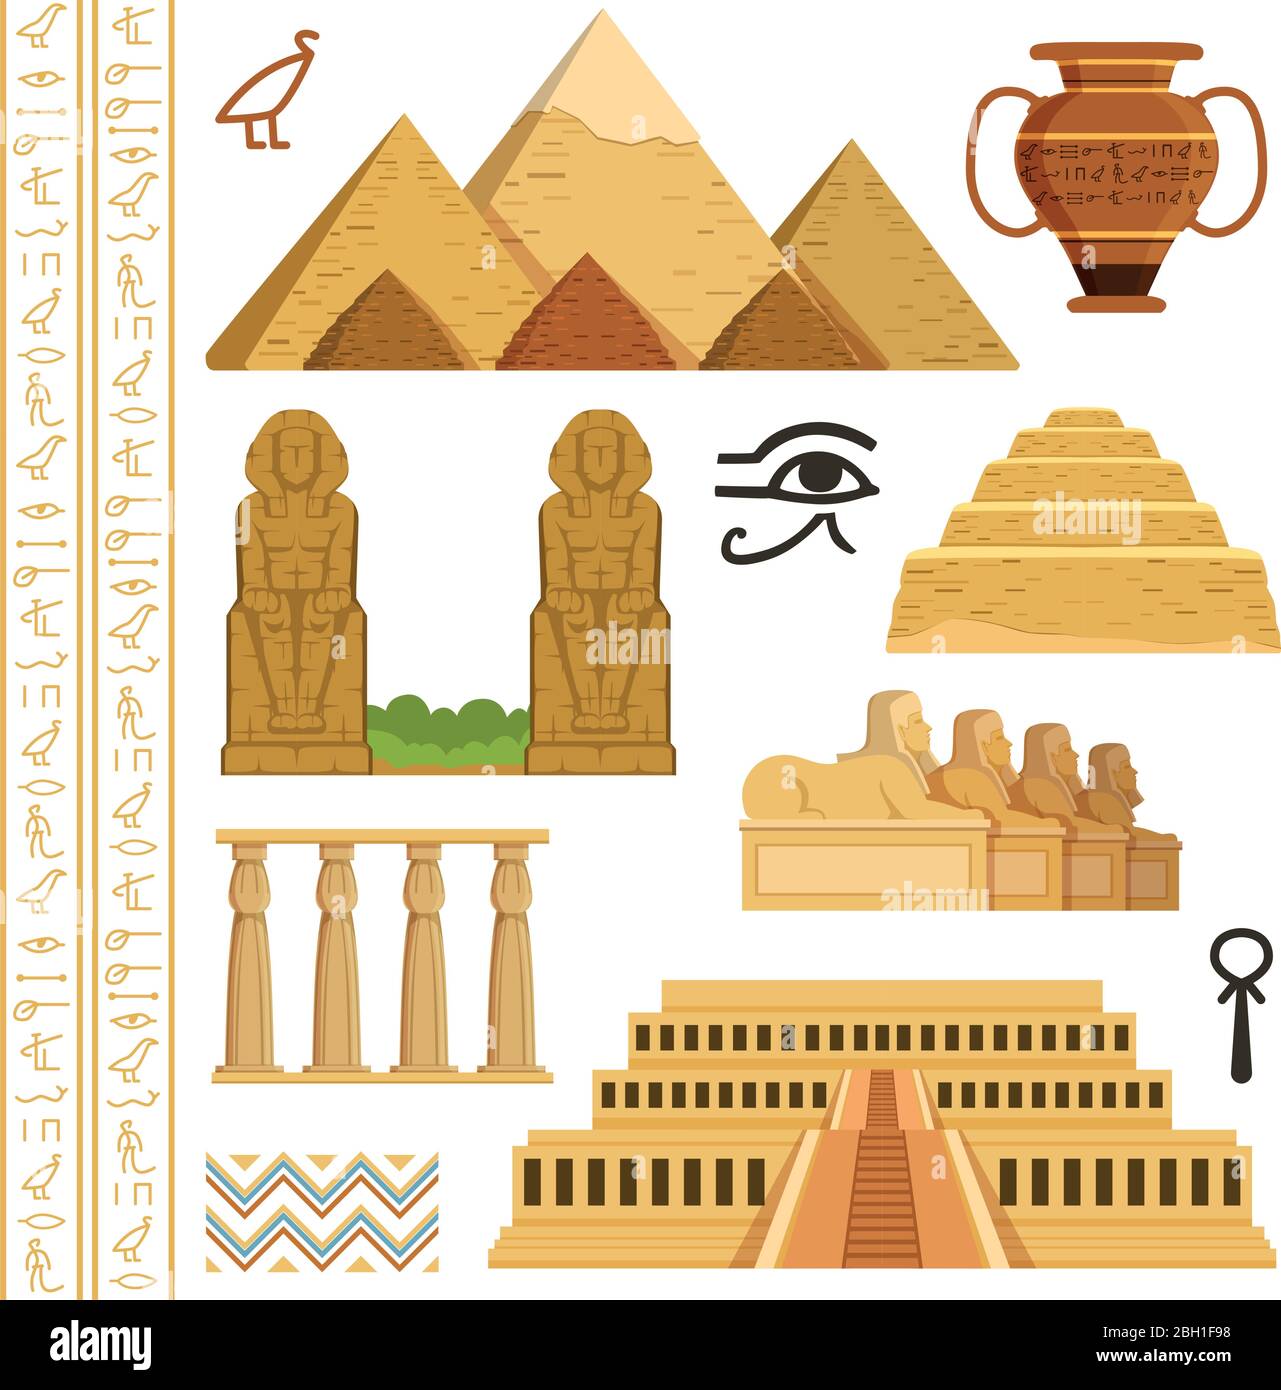 Architektonisches Wahrzeichen ägyptens. Verschiedene historische Objekte und Symbole. Denkmal Wahrzeichen und Architektur ägypten. Vektorgrafik Stock Vektor